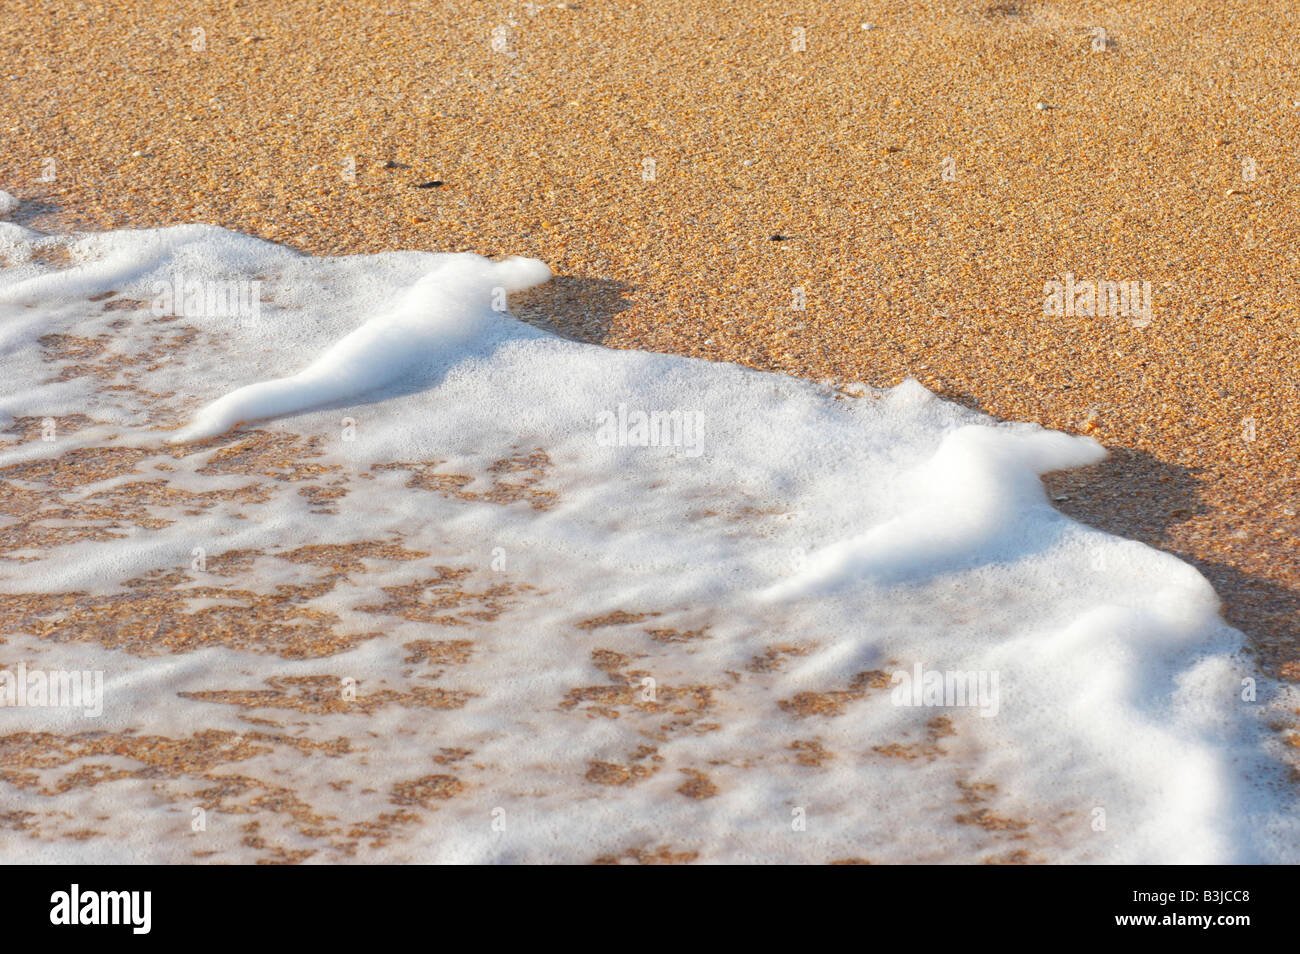 Sea surf foam on coastline sand Stock Photo